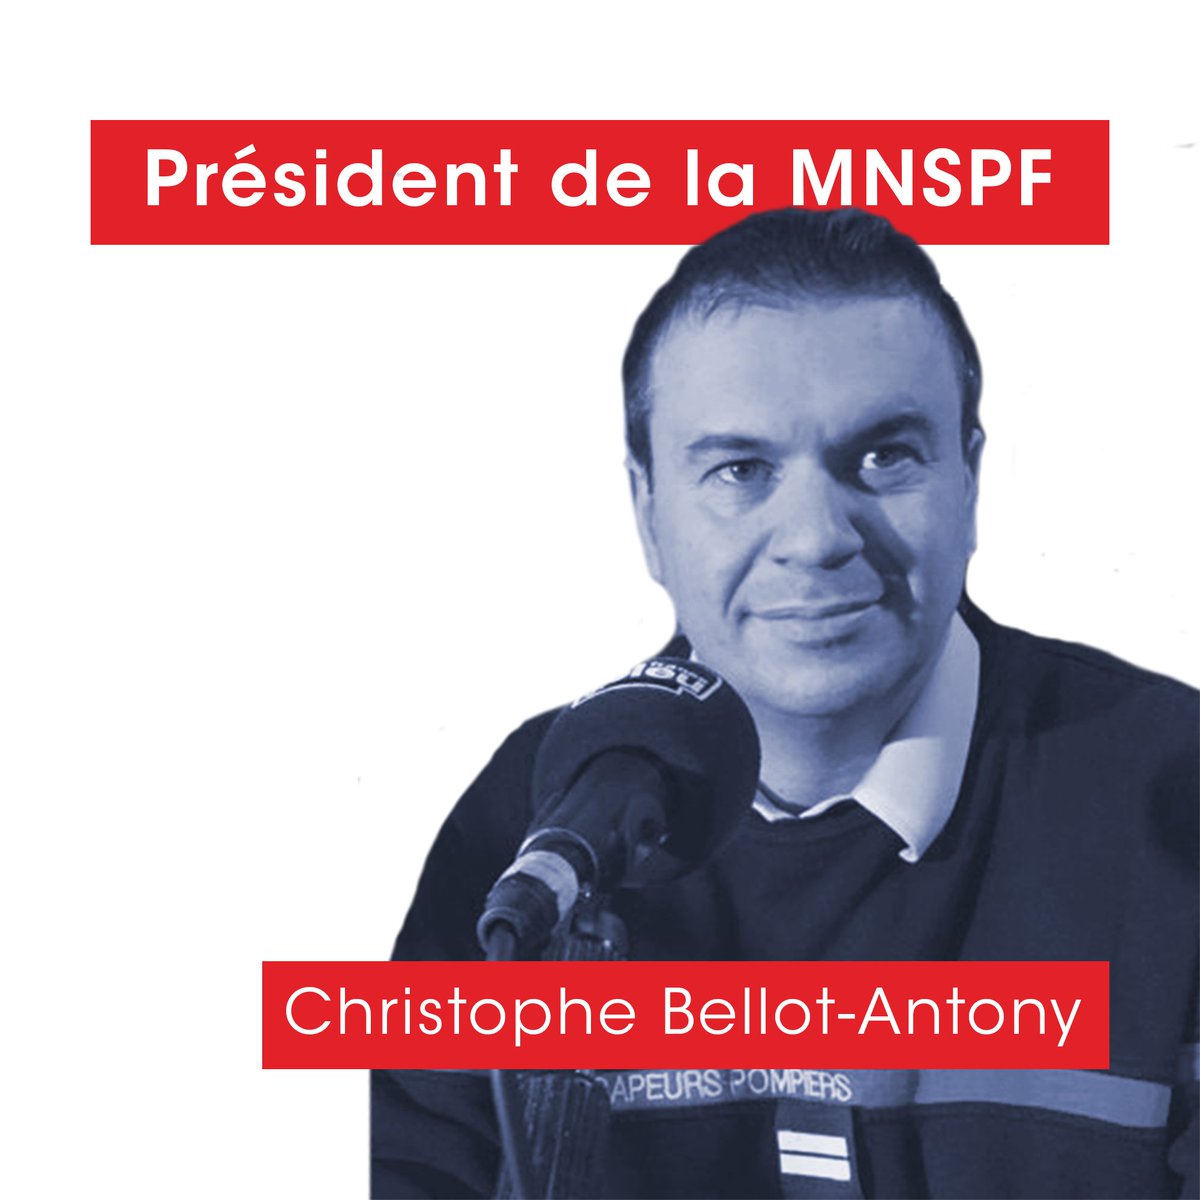 Suite à l’annonce du départ d’Alain Boulou, Christophe Bellot-Antony a été élu le 12/01 Président par le CA de la MNSPF. 'Nous nous devons d’agir collectivement afin que notre Mutuelle devienne l’acteur incontournable de notre réseau, au service des sapeurs-#pompiers de France.'